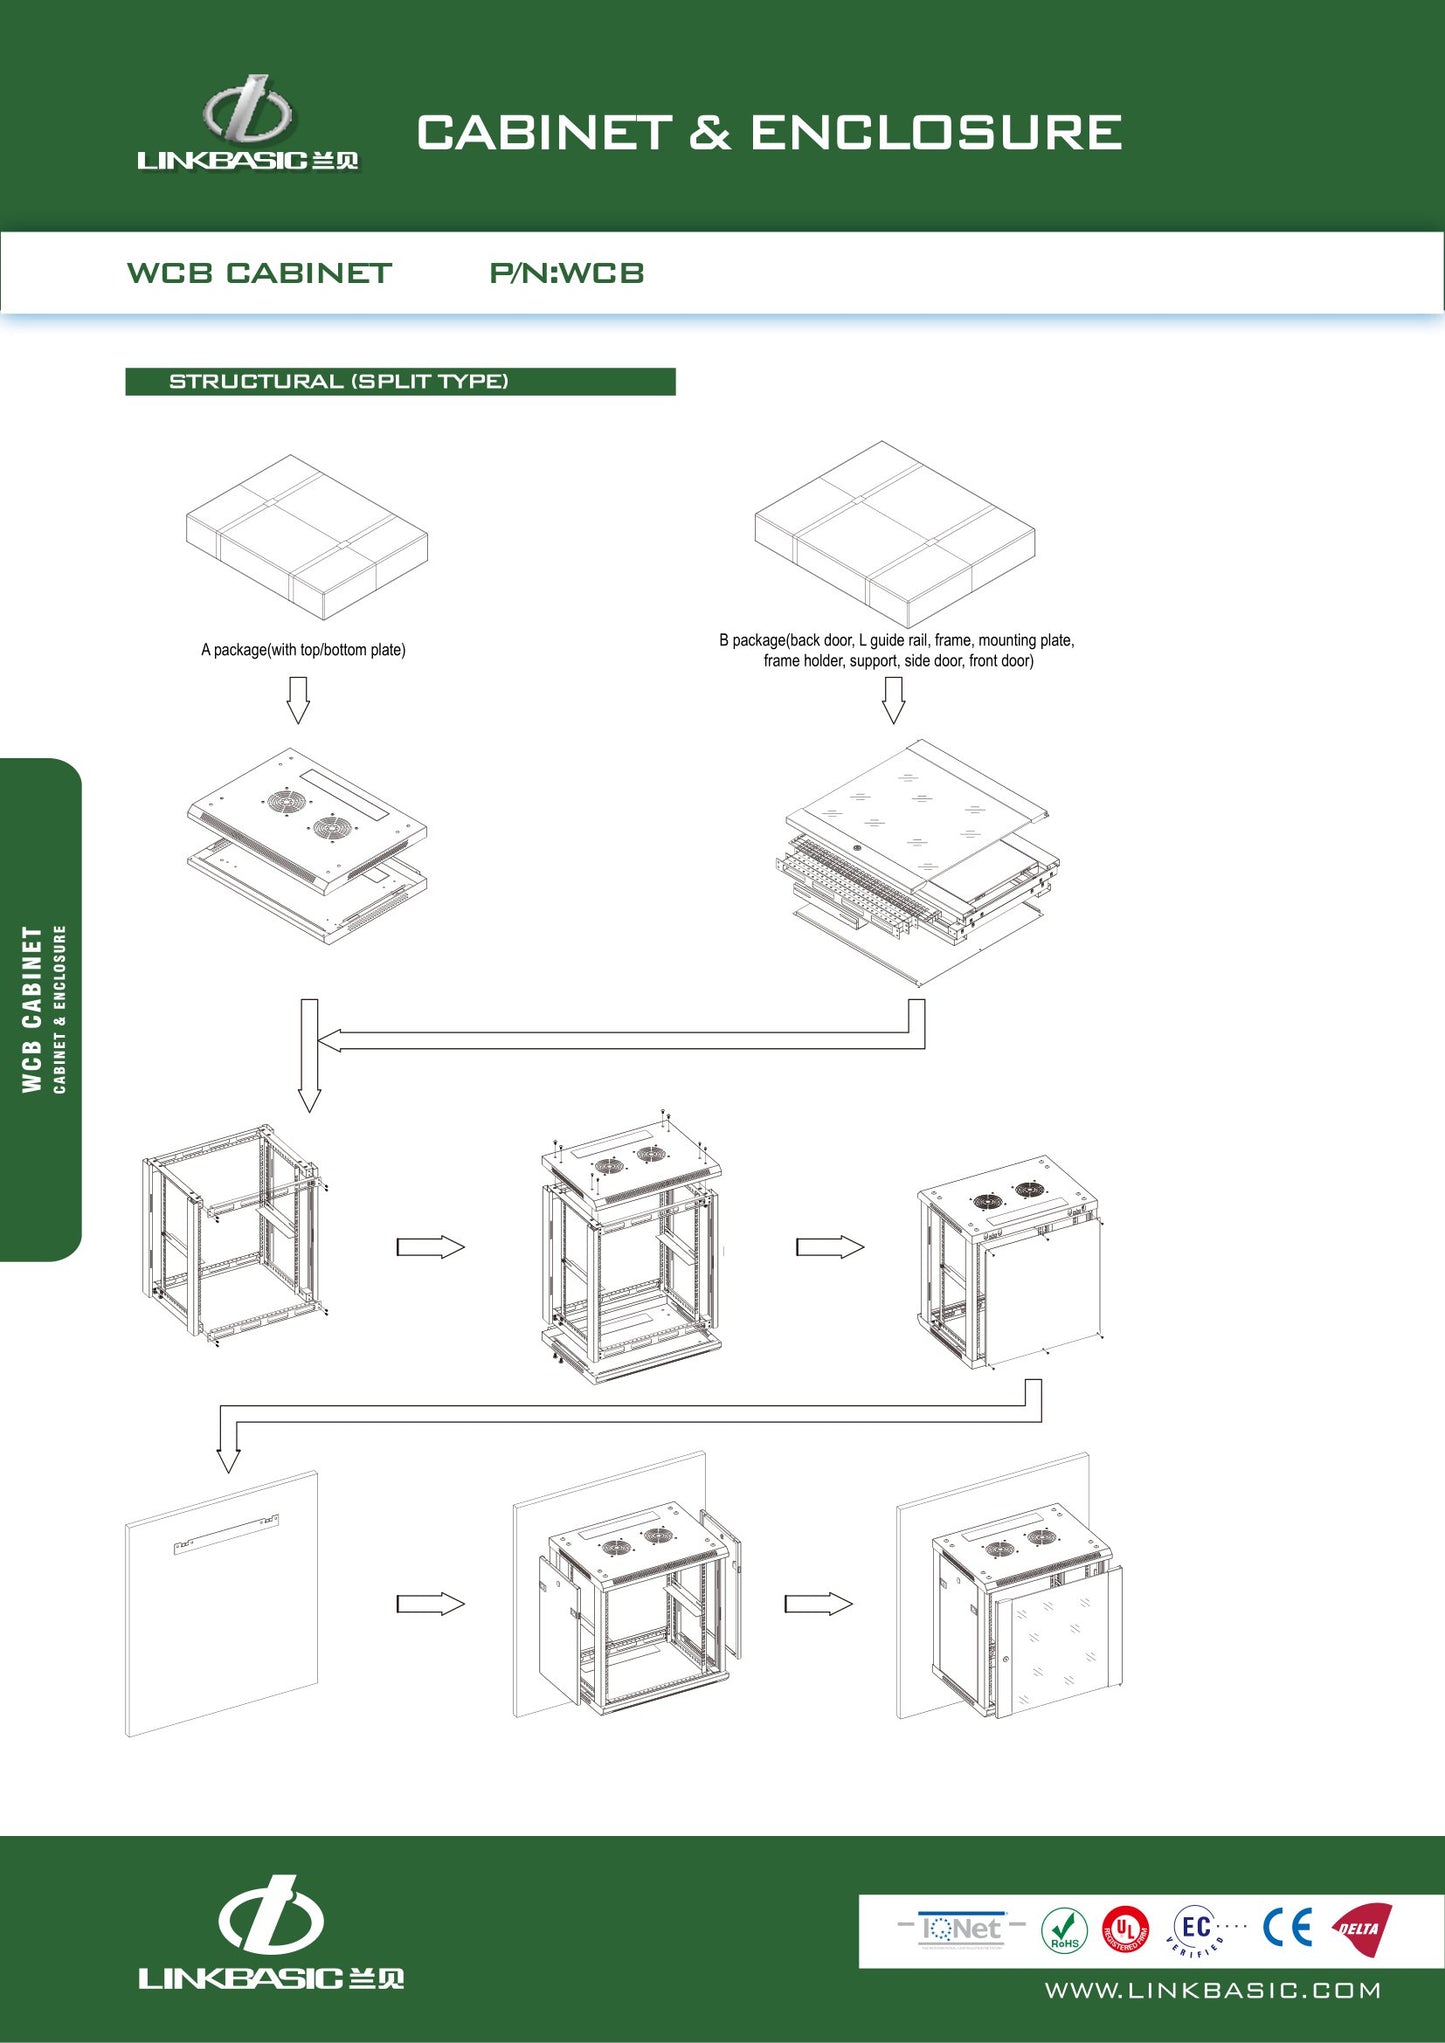 Linkbasic 9U Fixed Wall Box Network Cabinet.